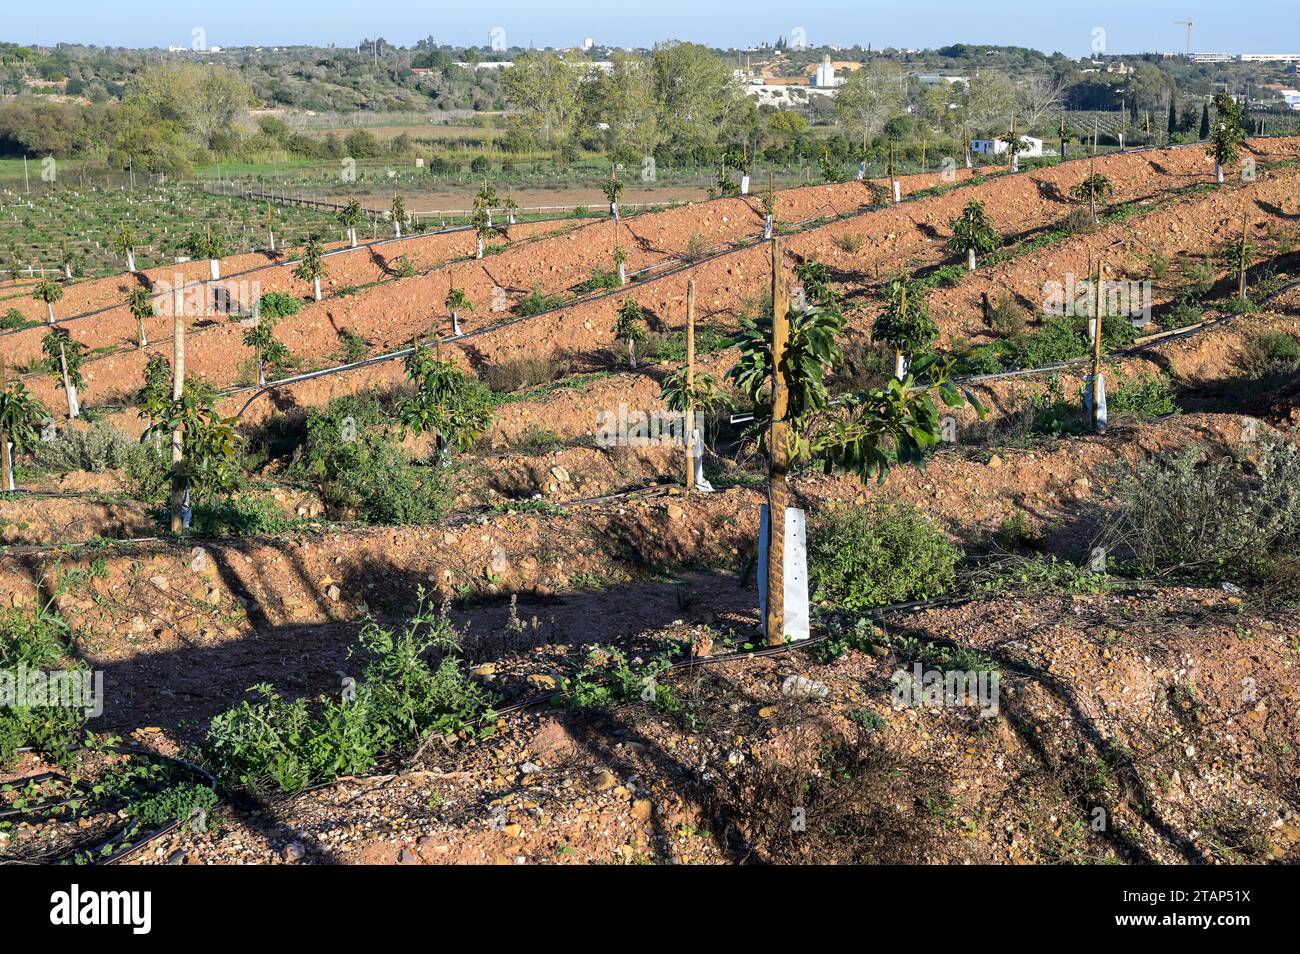 PORTUGAL, Algarve, Lagos, Avocado-Baumplantage mit Tropfbewässerung, Avocado-Landwirtschaft benötigt viel Wasser für die Bewässerung / Avocado Anbau mit Tröpfchenbewässerung , fuer die Bewaesserung wird viel Wasser verbraucht Stockfoto